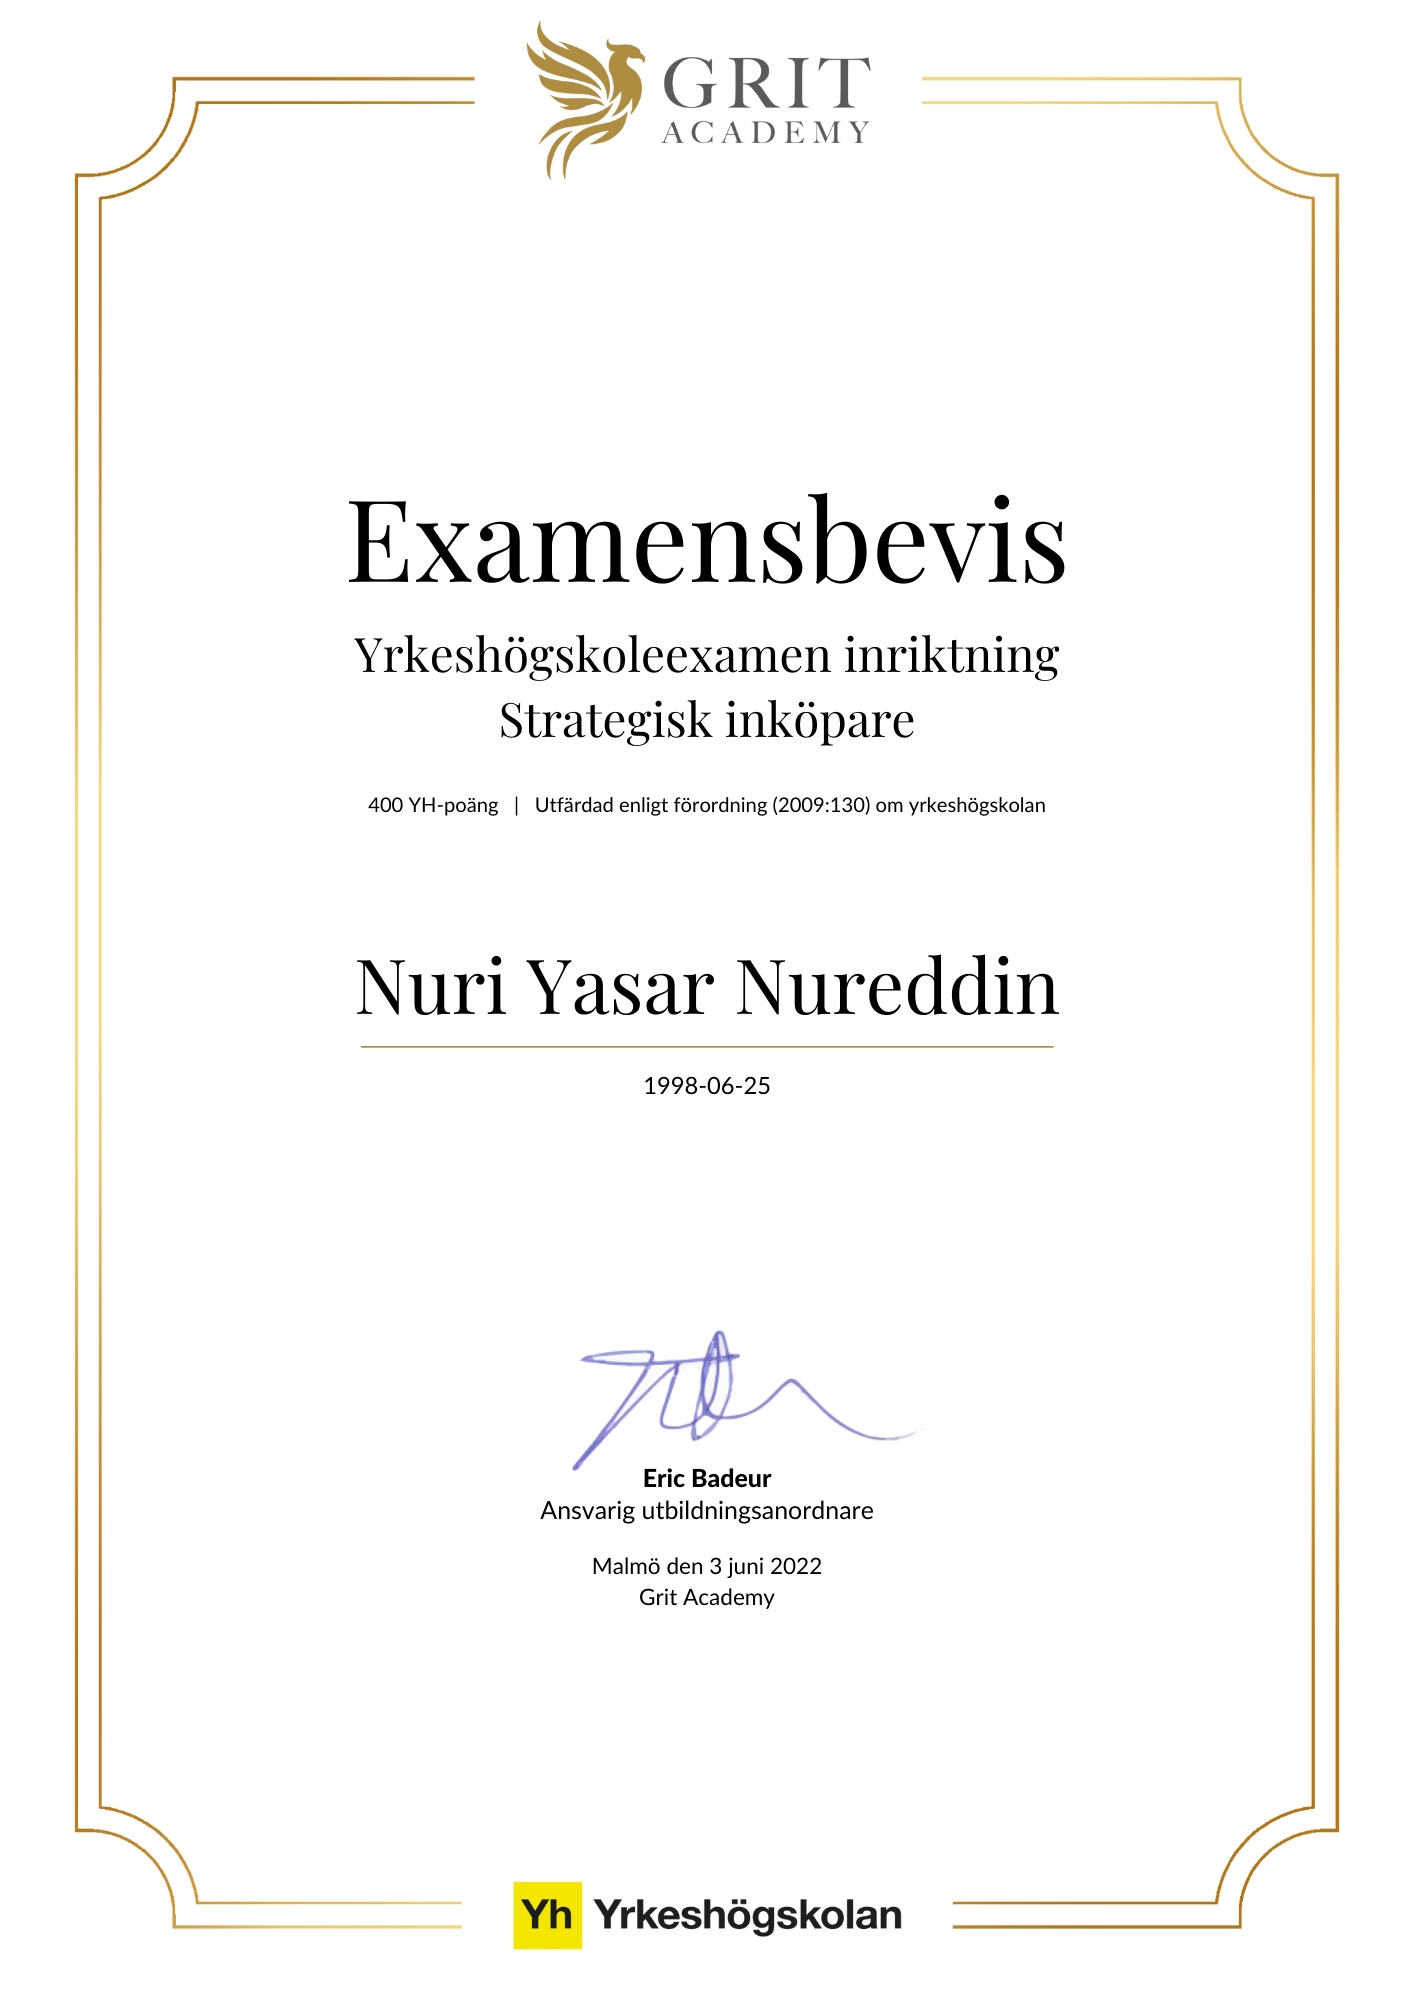 Examensbevis Nuri Yasar Nureddin - 1